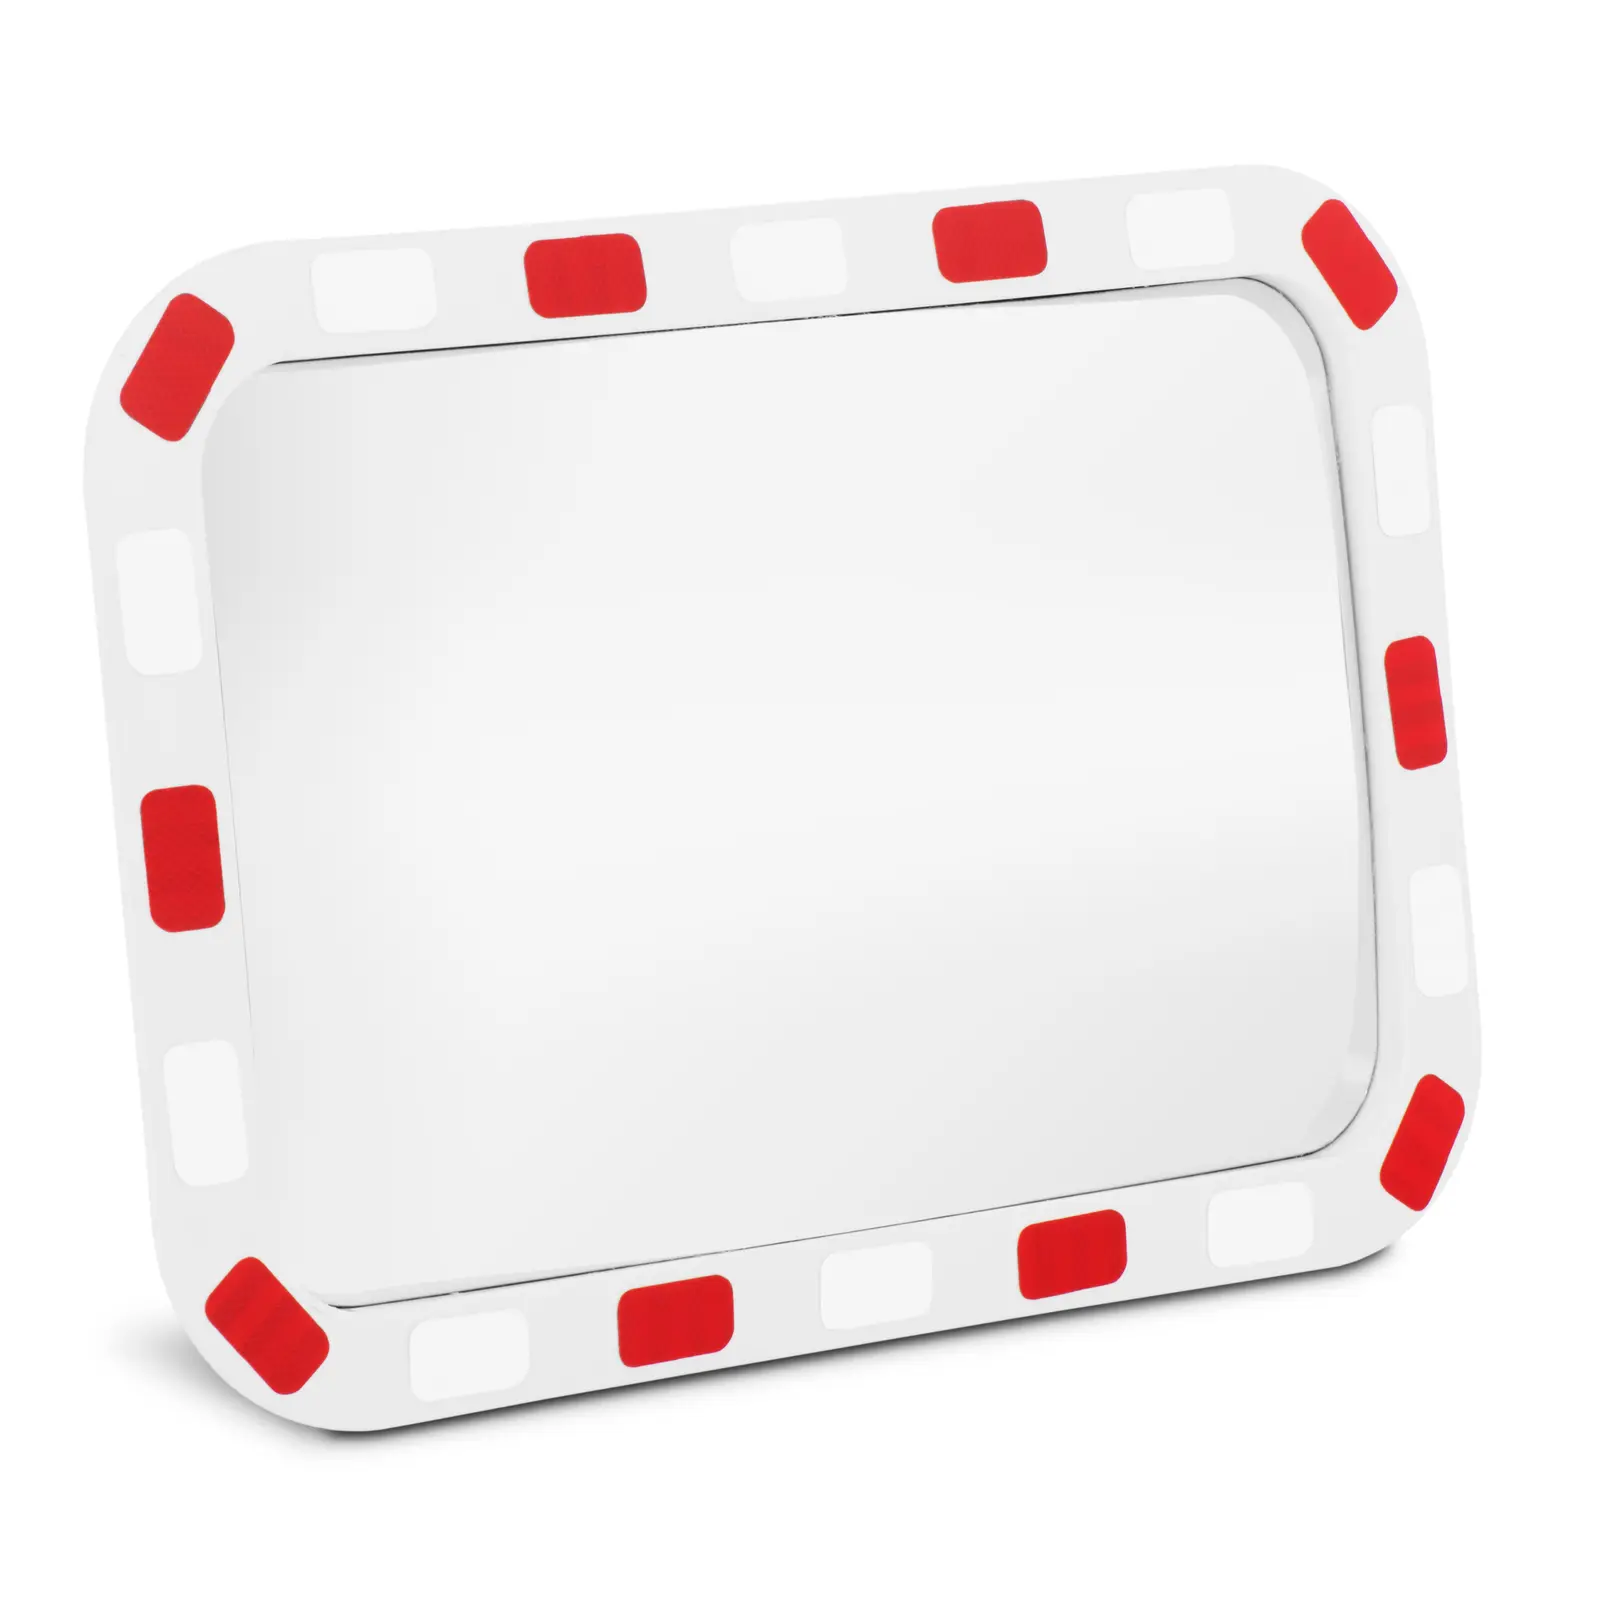 Specchio stradale - 40 x 80 x 8 cm - 130° - Rettangolare